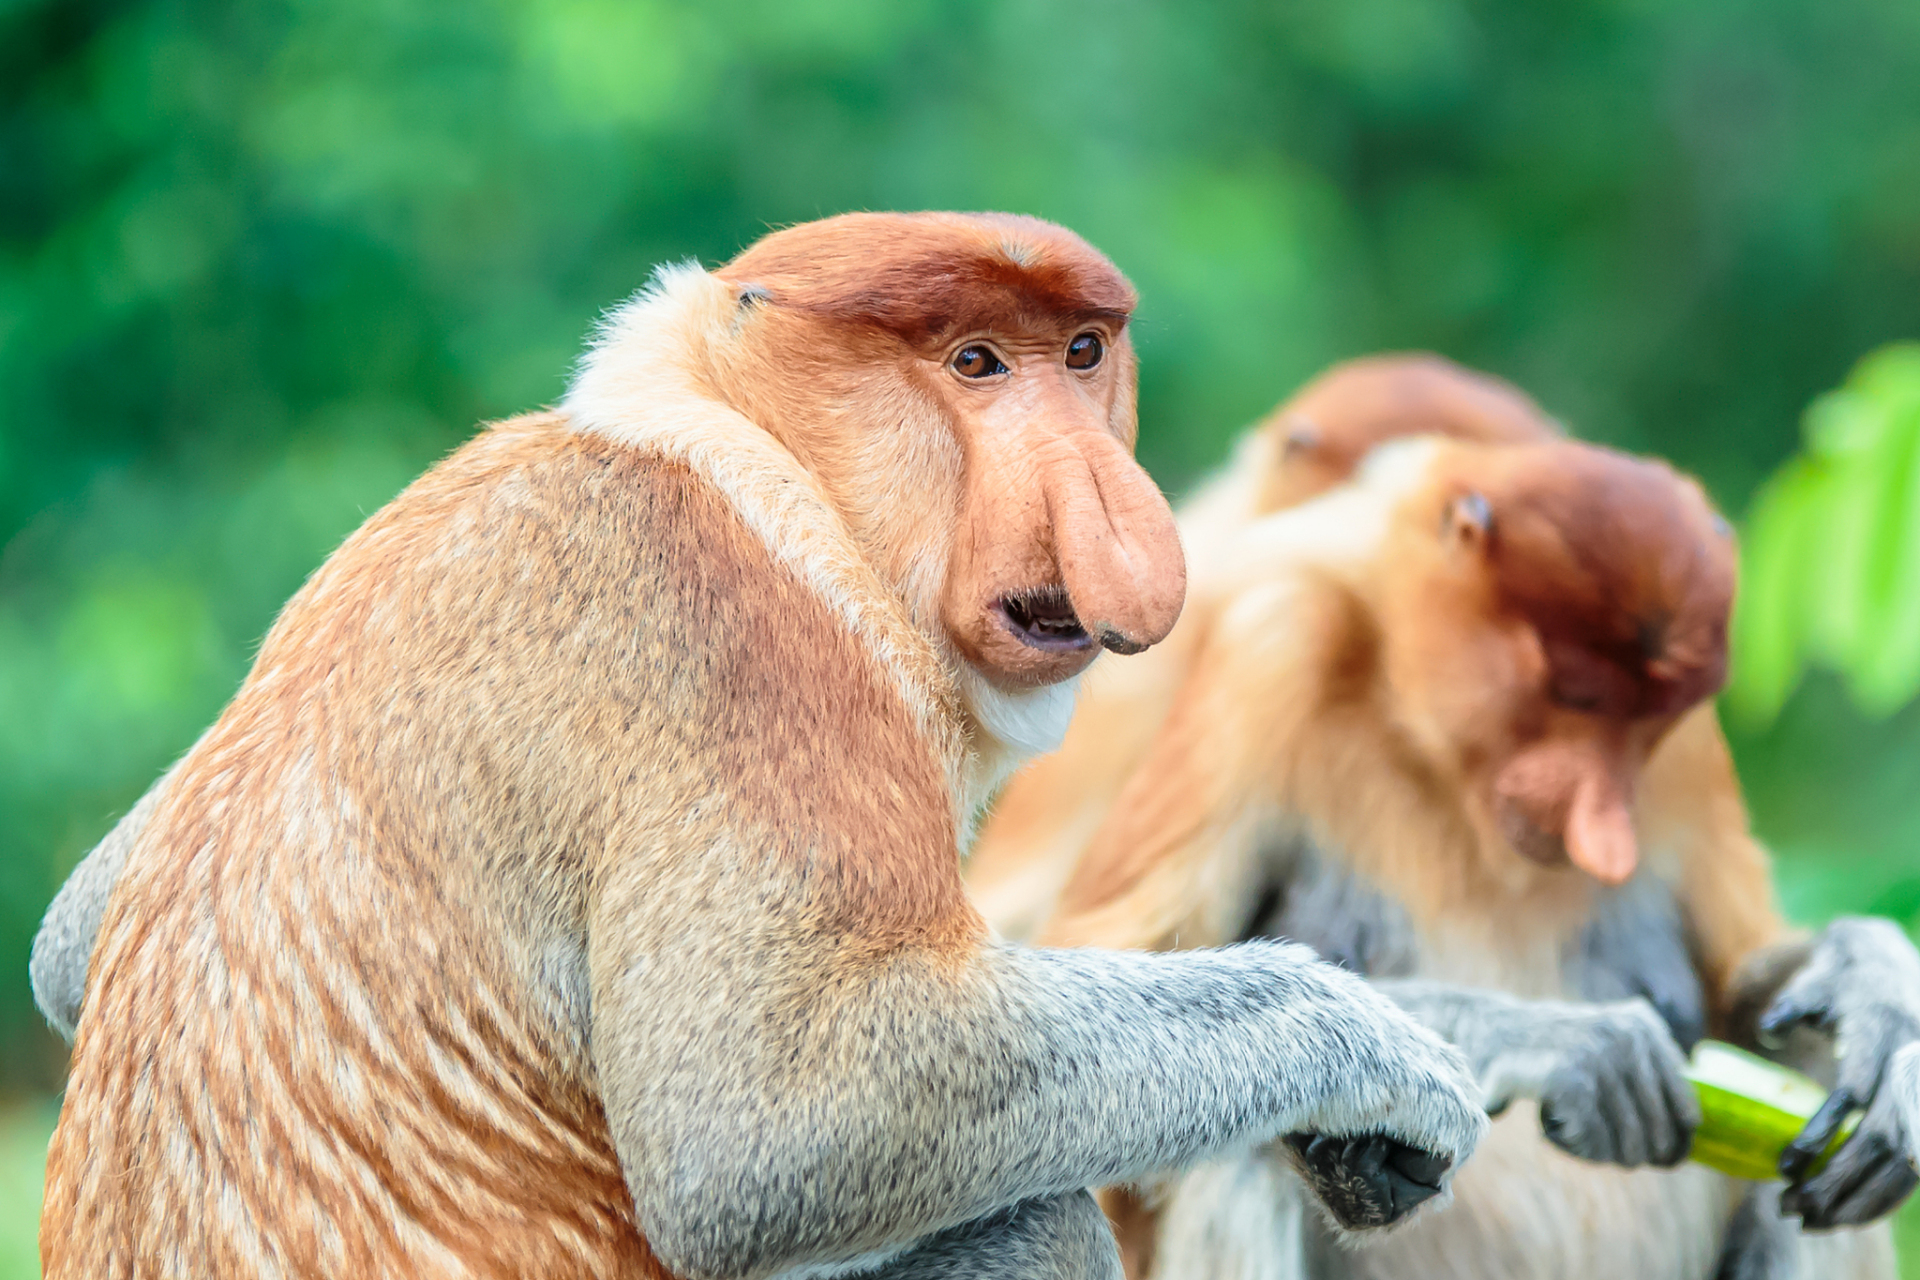 【模样滑稽的长鼻猴】长鼻猴分布在东南亚婆罗洲,成年雄性拥有巨大的